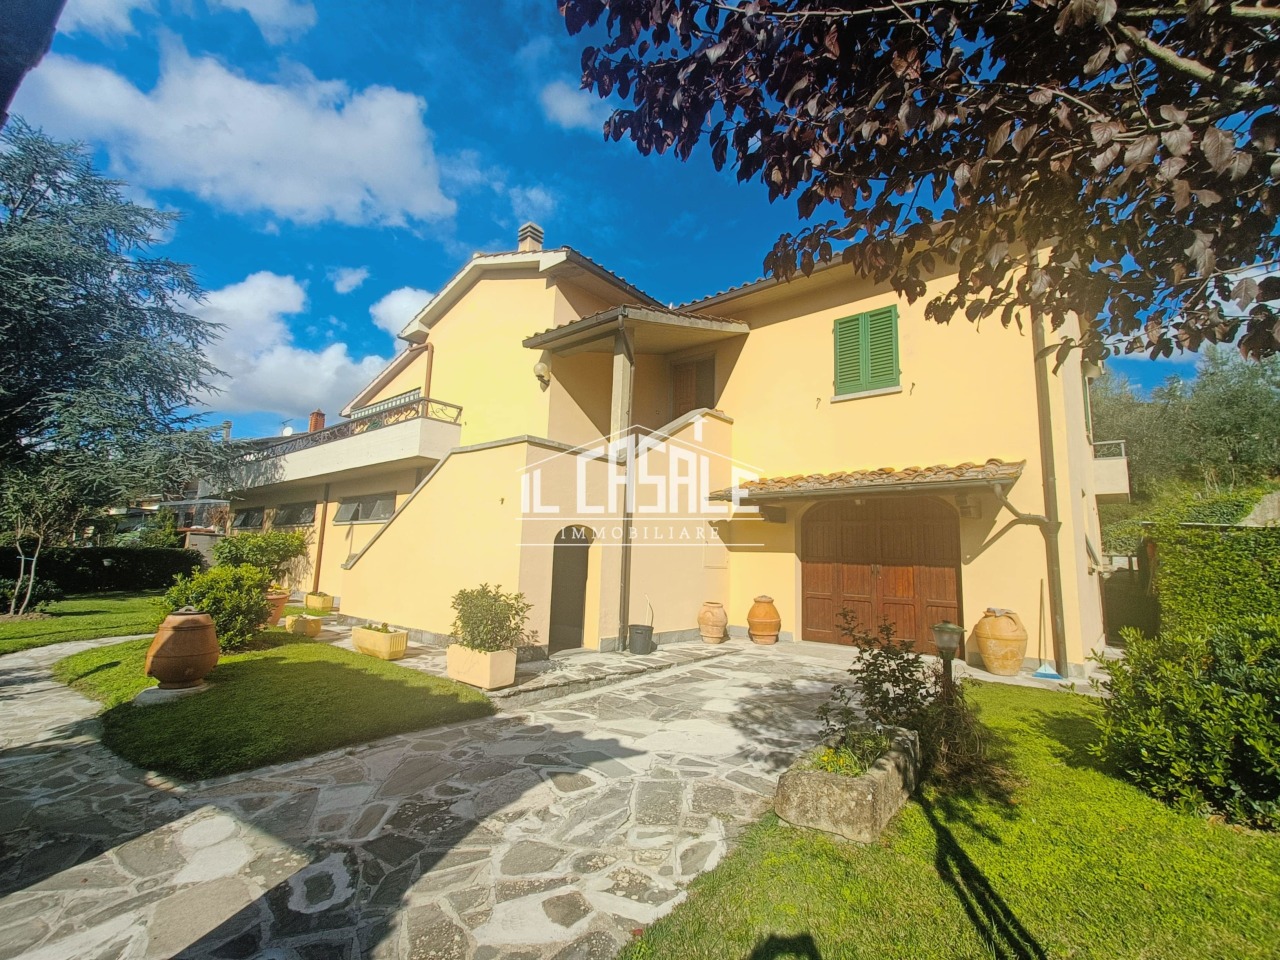 Villa in vendita a Dicomano, 7 locali, prezzo € 450.000 | PortaleAgenzieImmobiliari.it